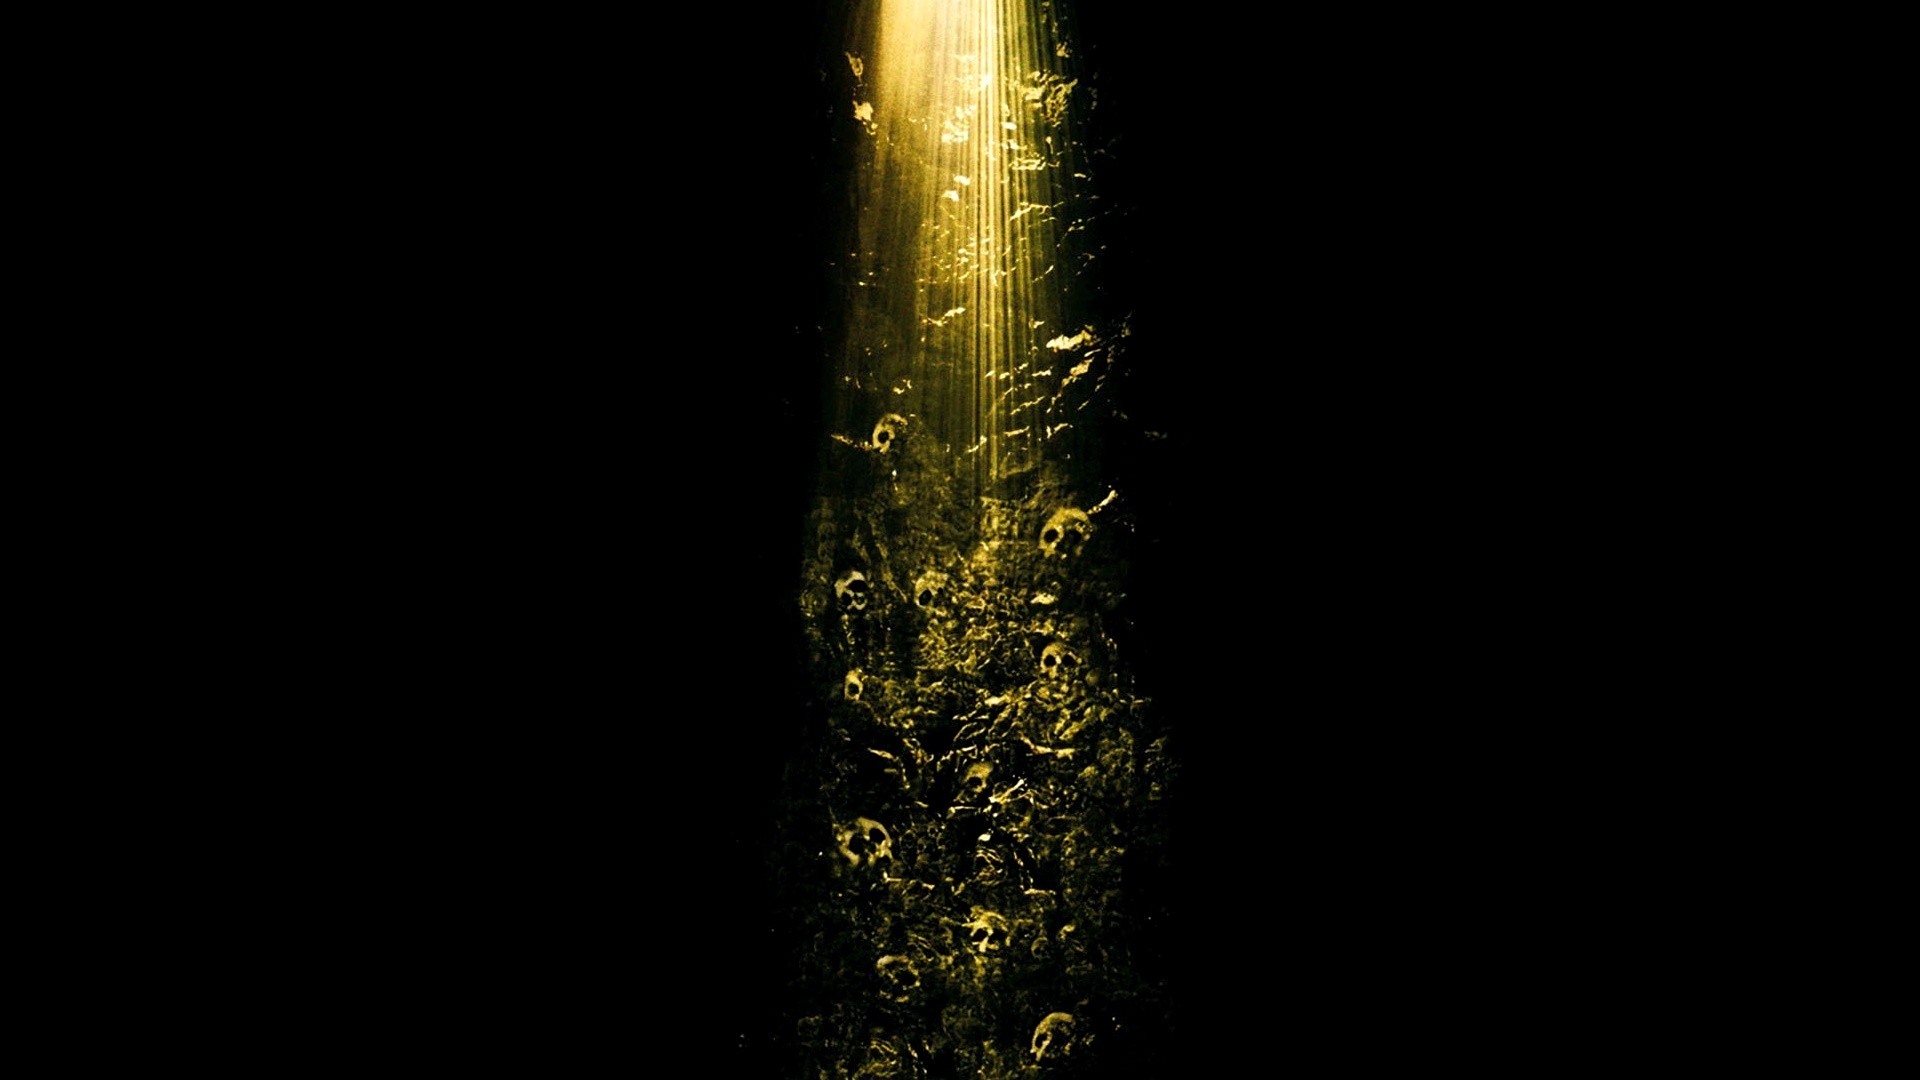 Популярные заставки и фоны Пещера (2005) на компьютер